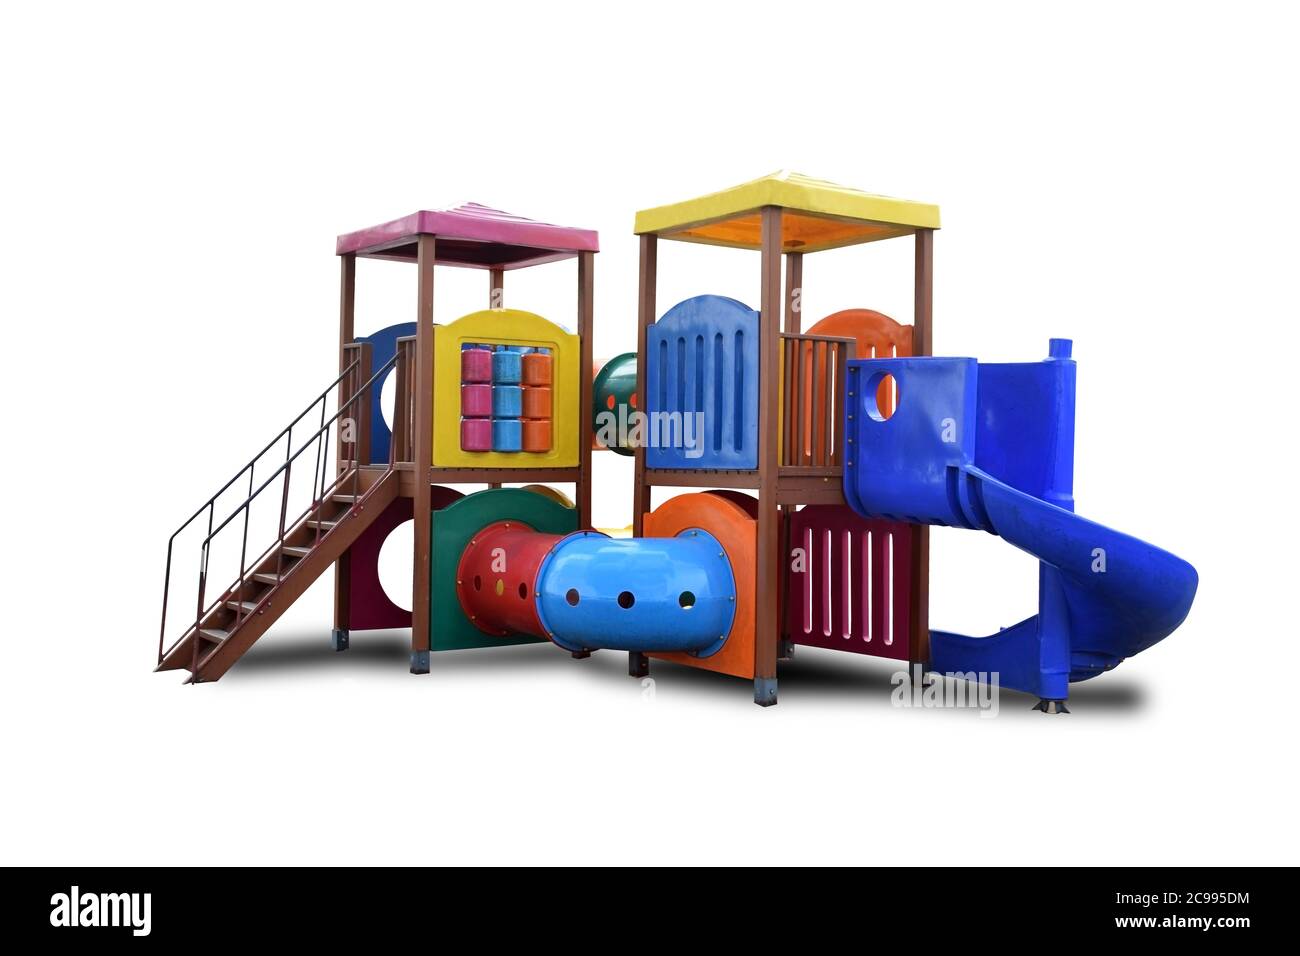 Combinaison colorée de la structure de jeu pour les petits enfants; toboggans, grimpeurs (escaliers dans ce cas), maison de jeu isolée sur fond blanc Banque D'Images